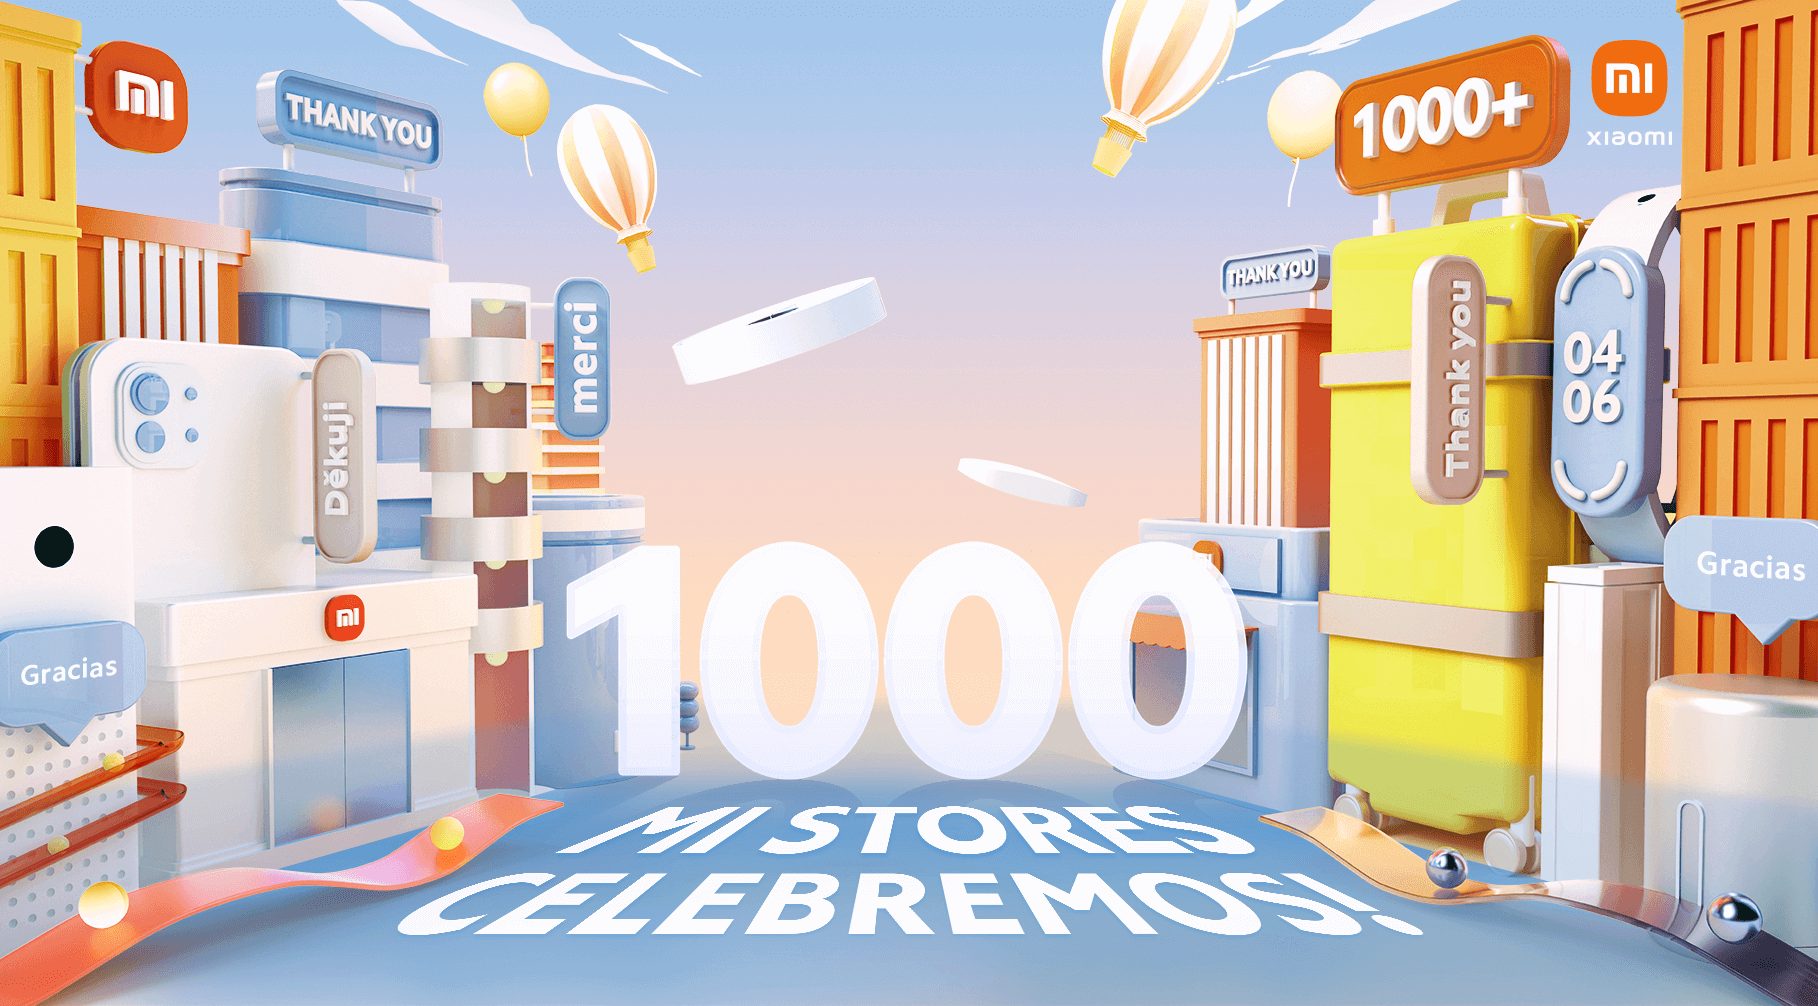 Foto de Xiaomi anuncia la apertura de más de 1000 tiendas en todo el mundo